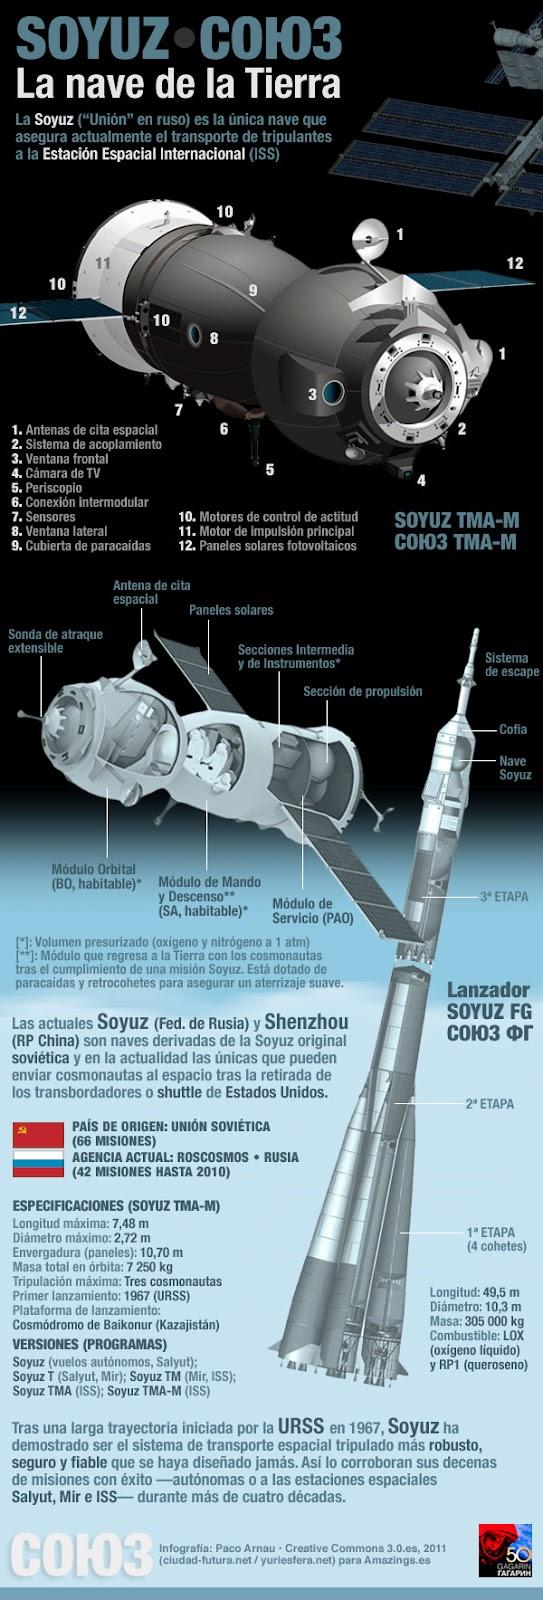 45 años de las naves Soyuz.